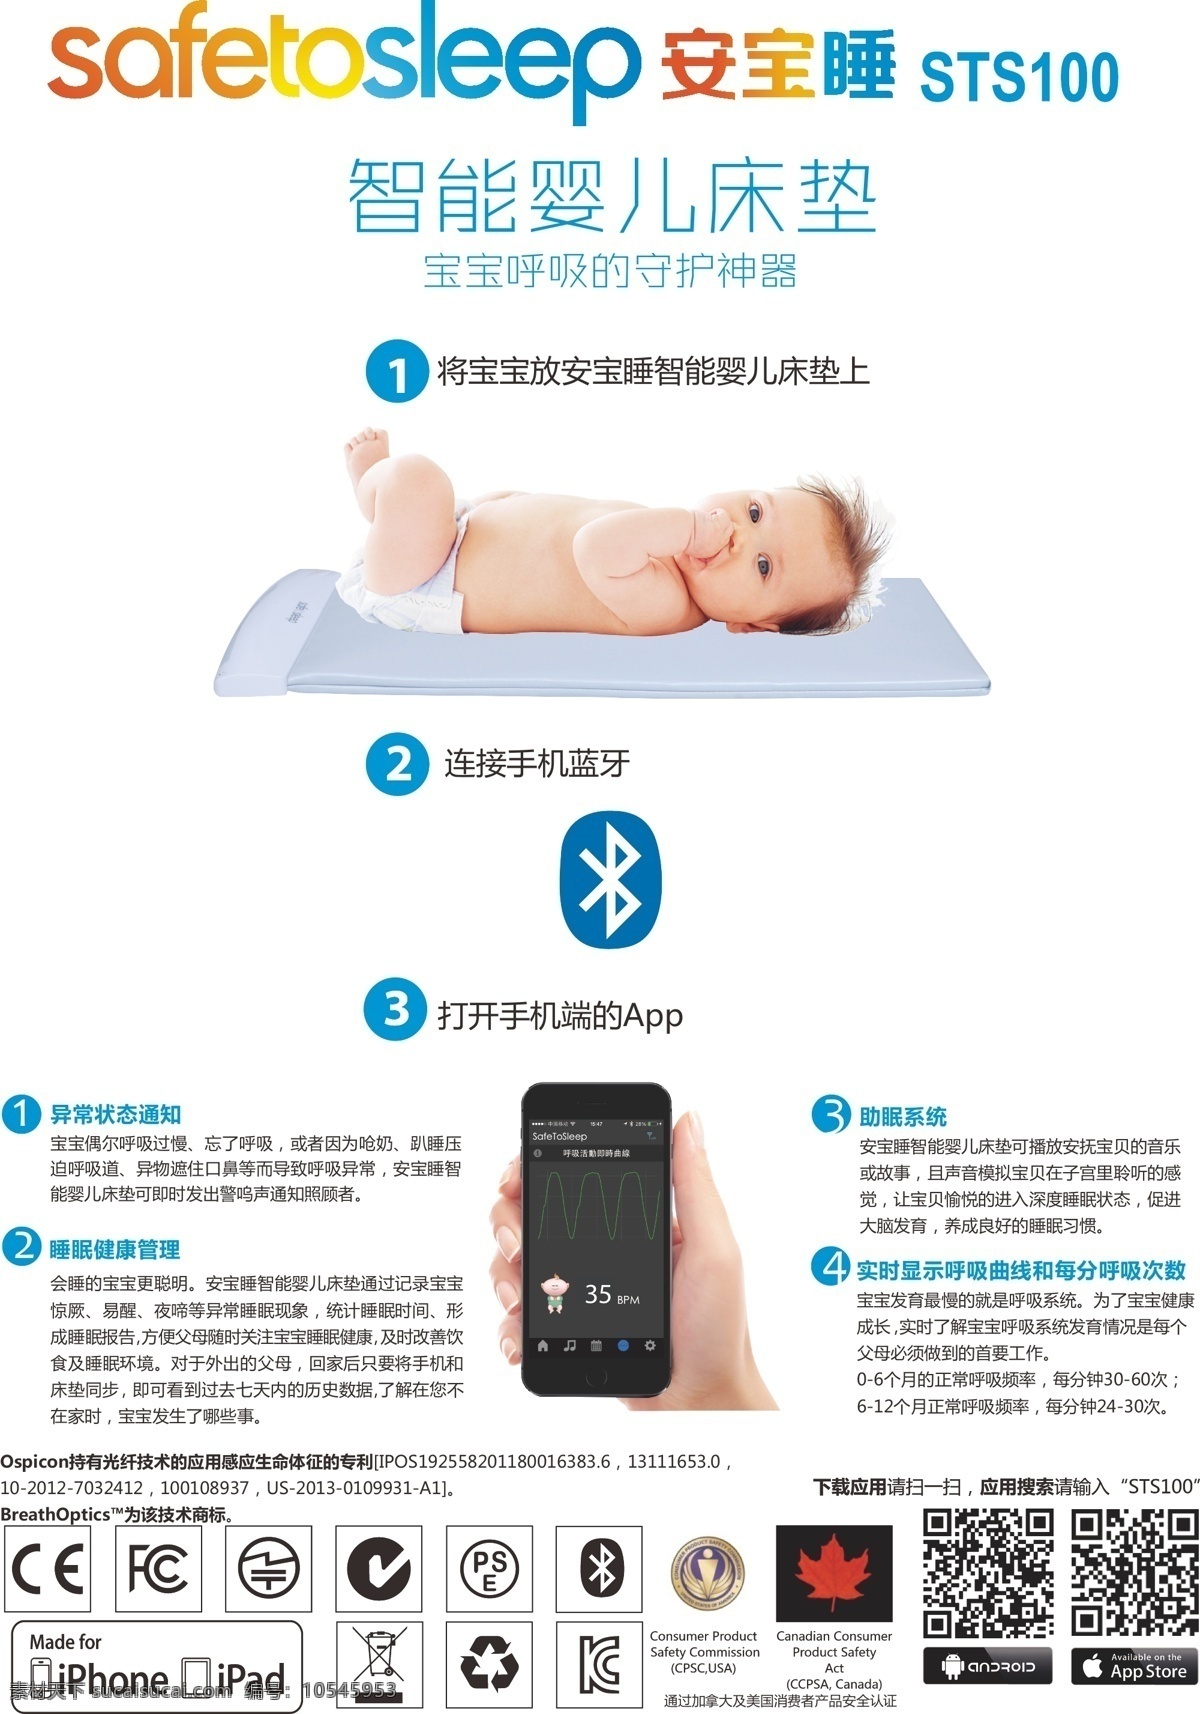 安宝 睡 智能 婴儿 床垫 a4 连接 广告 安宝睡 safetosleep 智能婴儿床垫 呼吸监控系统 蓝牙连接